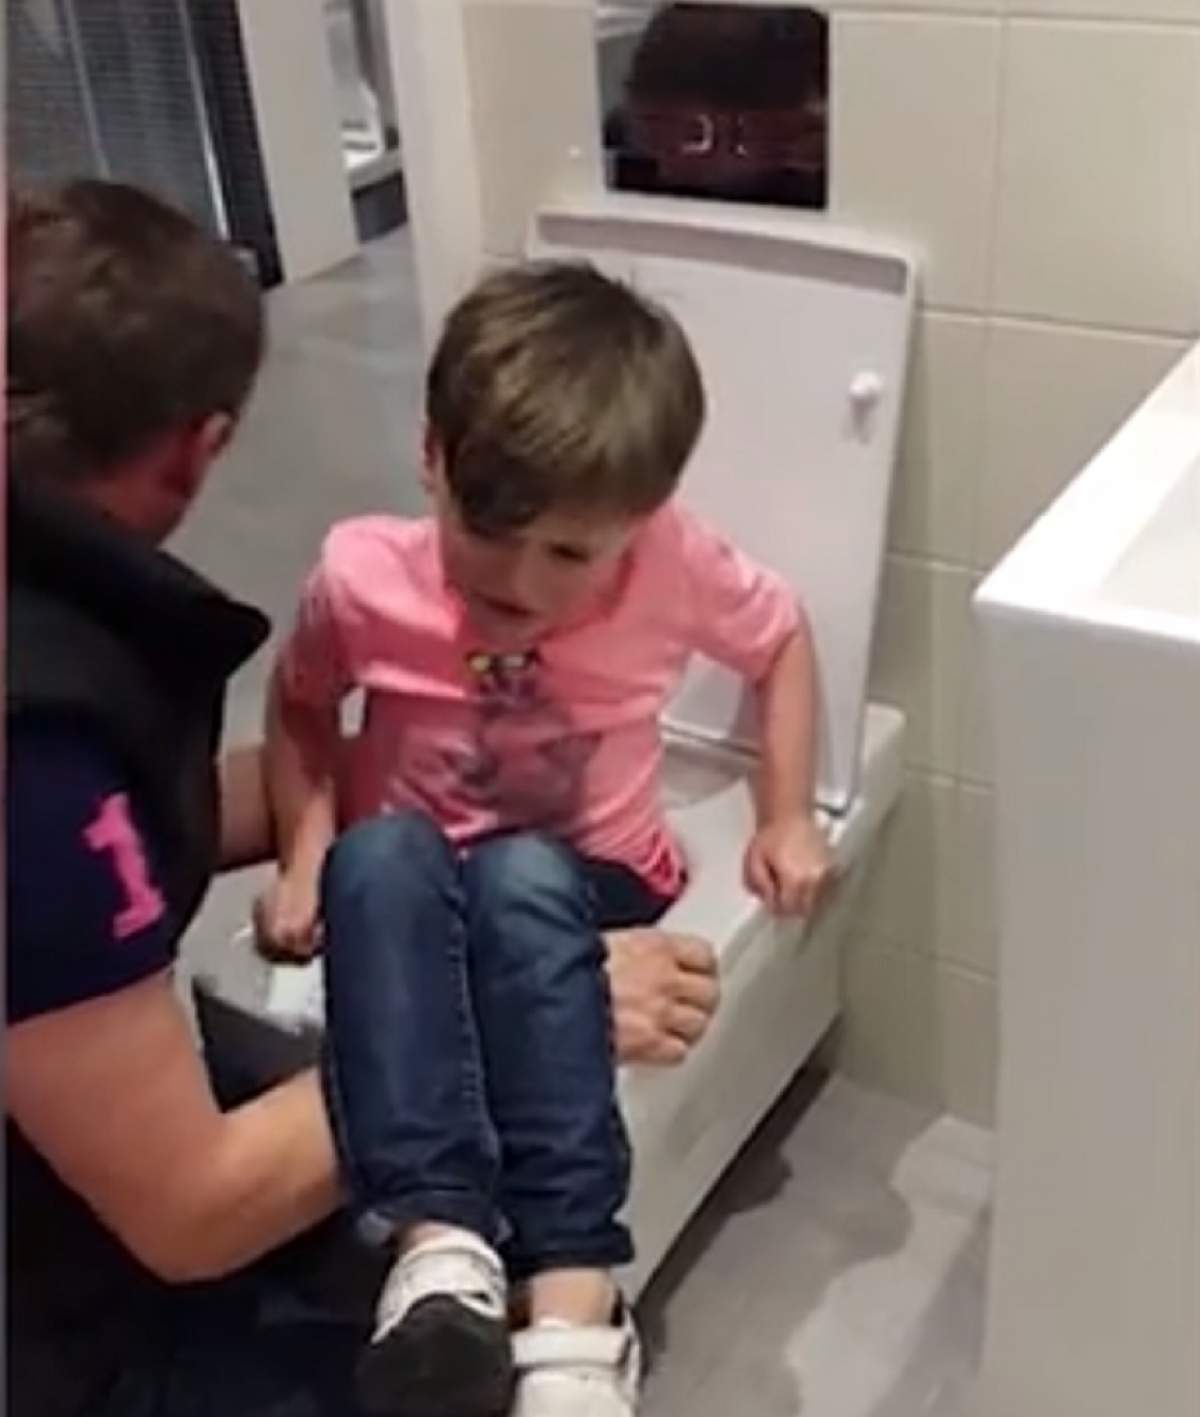 VIDEO / O mamă şi-a filmat copilul blocat în vasul de toaletă, în timp ce ţipa disperat: "Mai aveai puţin și mă omorai". Reacţia femeii a stârnit controverse